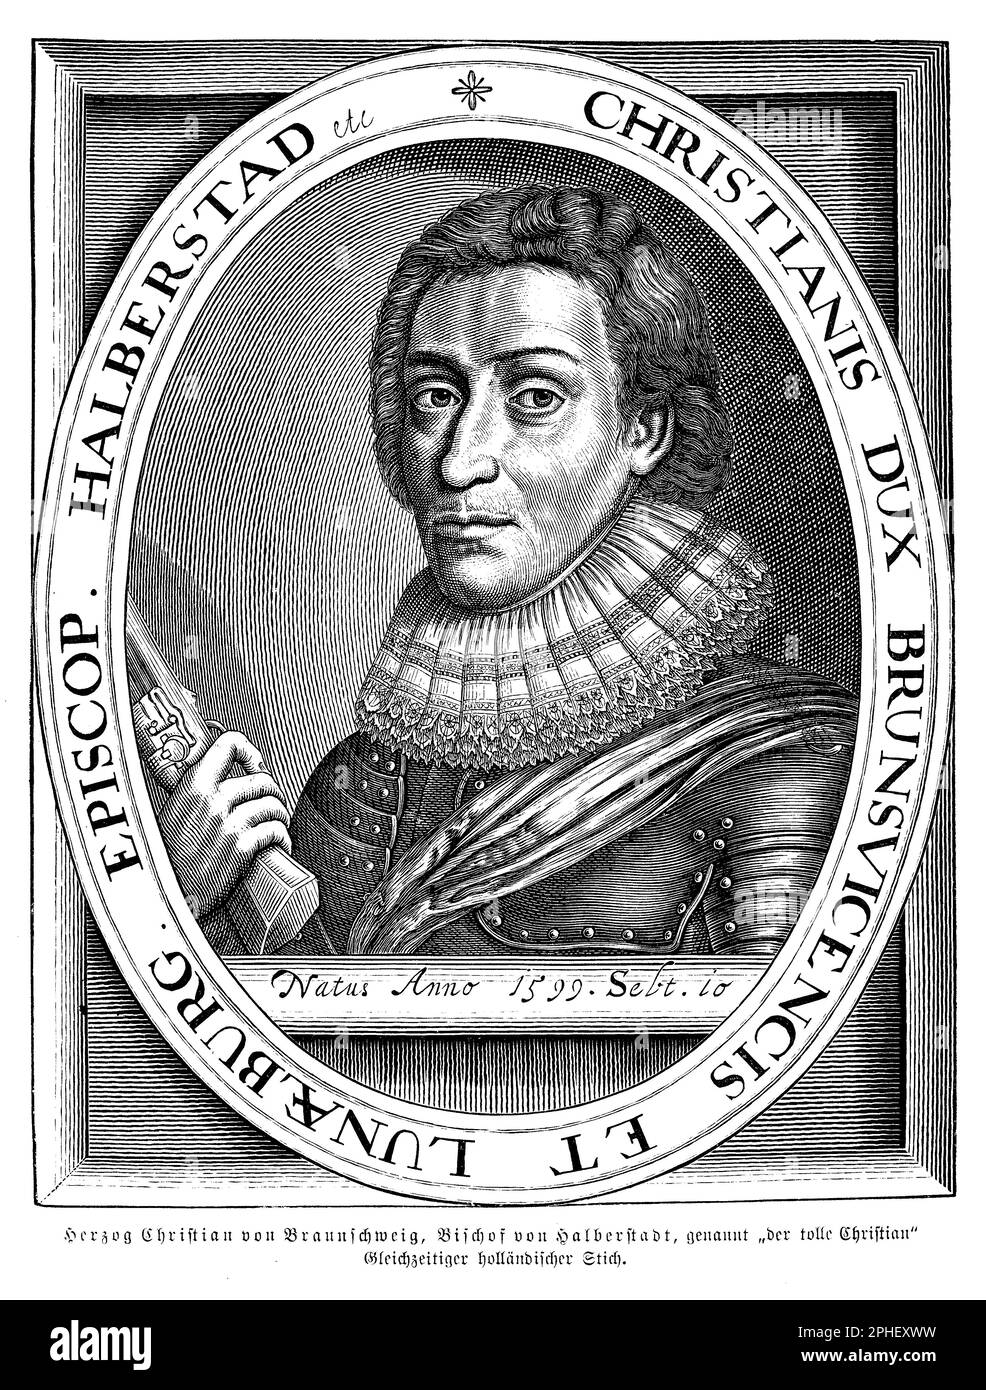 Herzog Christian (1599-1626), auch als Christian der Jüngere bekannt, war der Herzog von Brunswick-Lueneburg, ein Fürstentum in Norddeutschland, zu Beginn des Dreißigjährigen Krieges. Er war ein prominenter Militärführer und kämpfte auf protestantischer Seite gegen die katholischen Kräfte. Christian war bekannt für seinen Mut und strategischen Scharfsinn, aber er erlitt auch eine Reihe von Niederlagen im Kampf. Er starb 1626 in der Schlacht von Lutter. Christian war auch Schutzpatron der Künste und Wissenschaften, und sein Hof in Wolfenbüttel wurde zu einem Zentrum des humanistischen Lernens und der barocken Kultur Stockfoto